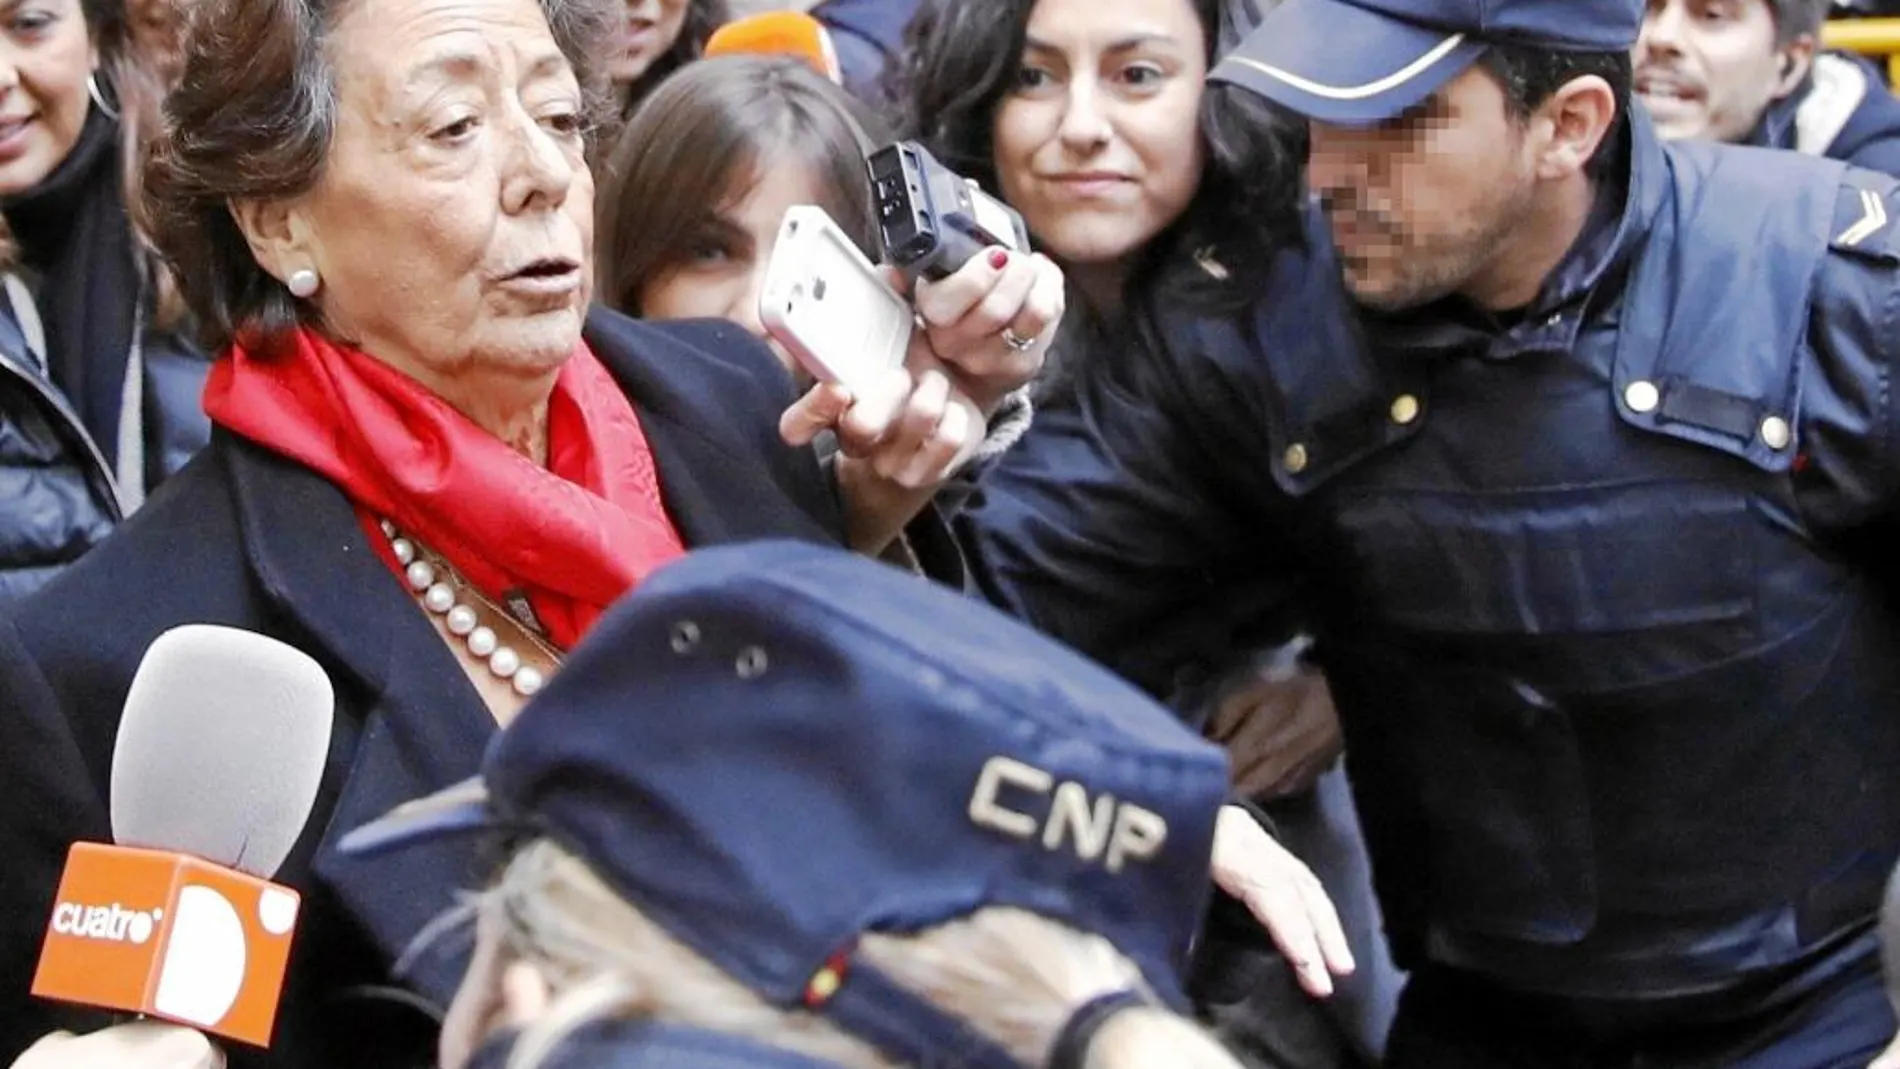 La última vez que las cámaras pudieron captar una imagen de la ex alcaldesa valenciana fue el pasado lunes, tras su declaración ante el Tribunal Supremo